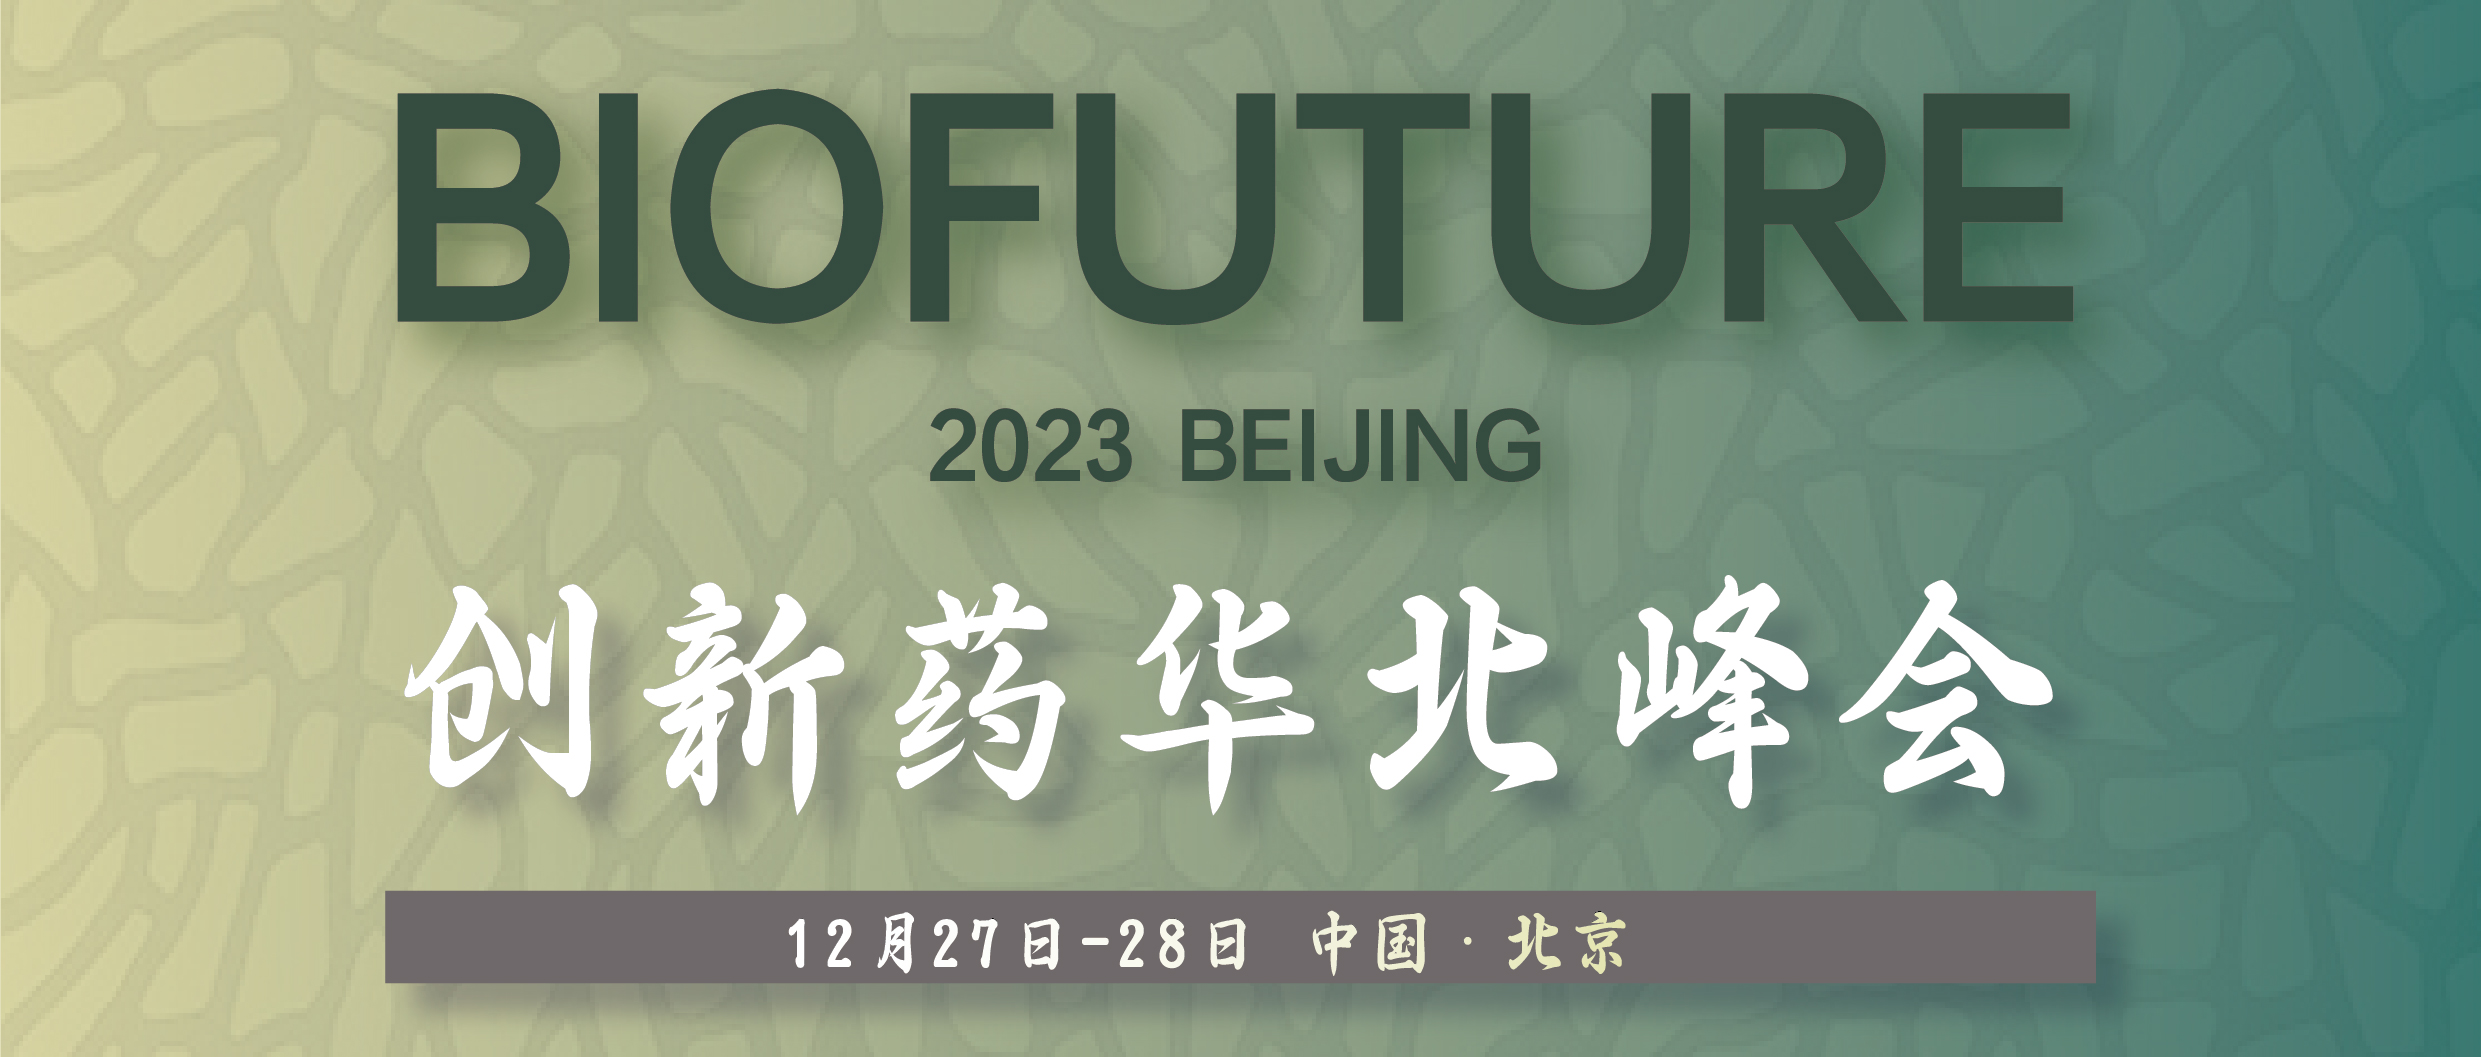 BioFuture 2023創新藥華北峰會